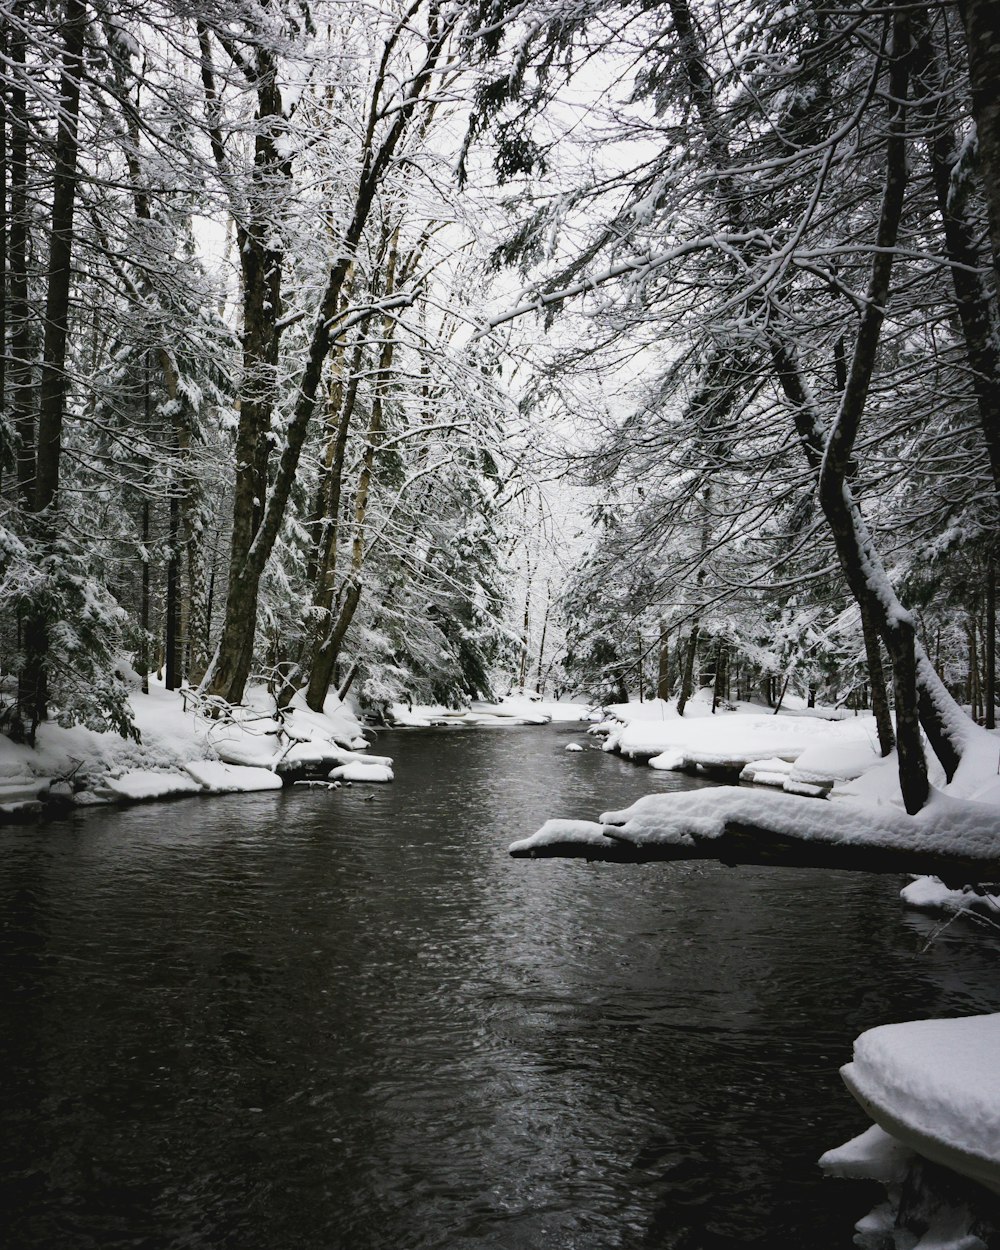 Photographie en niveaux de gris de la rivière entre les sols enneigés à l’ombre des arbres pendant la journée